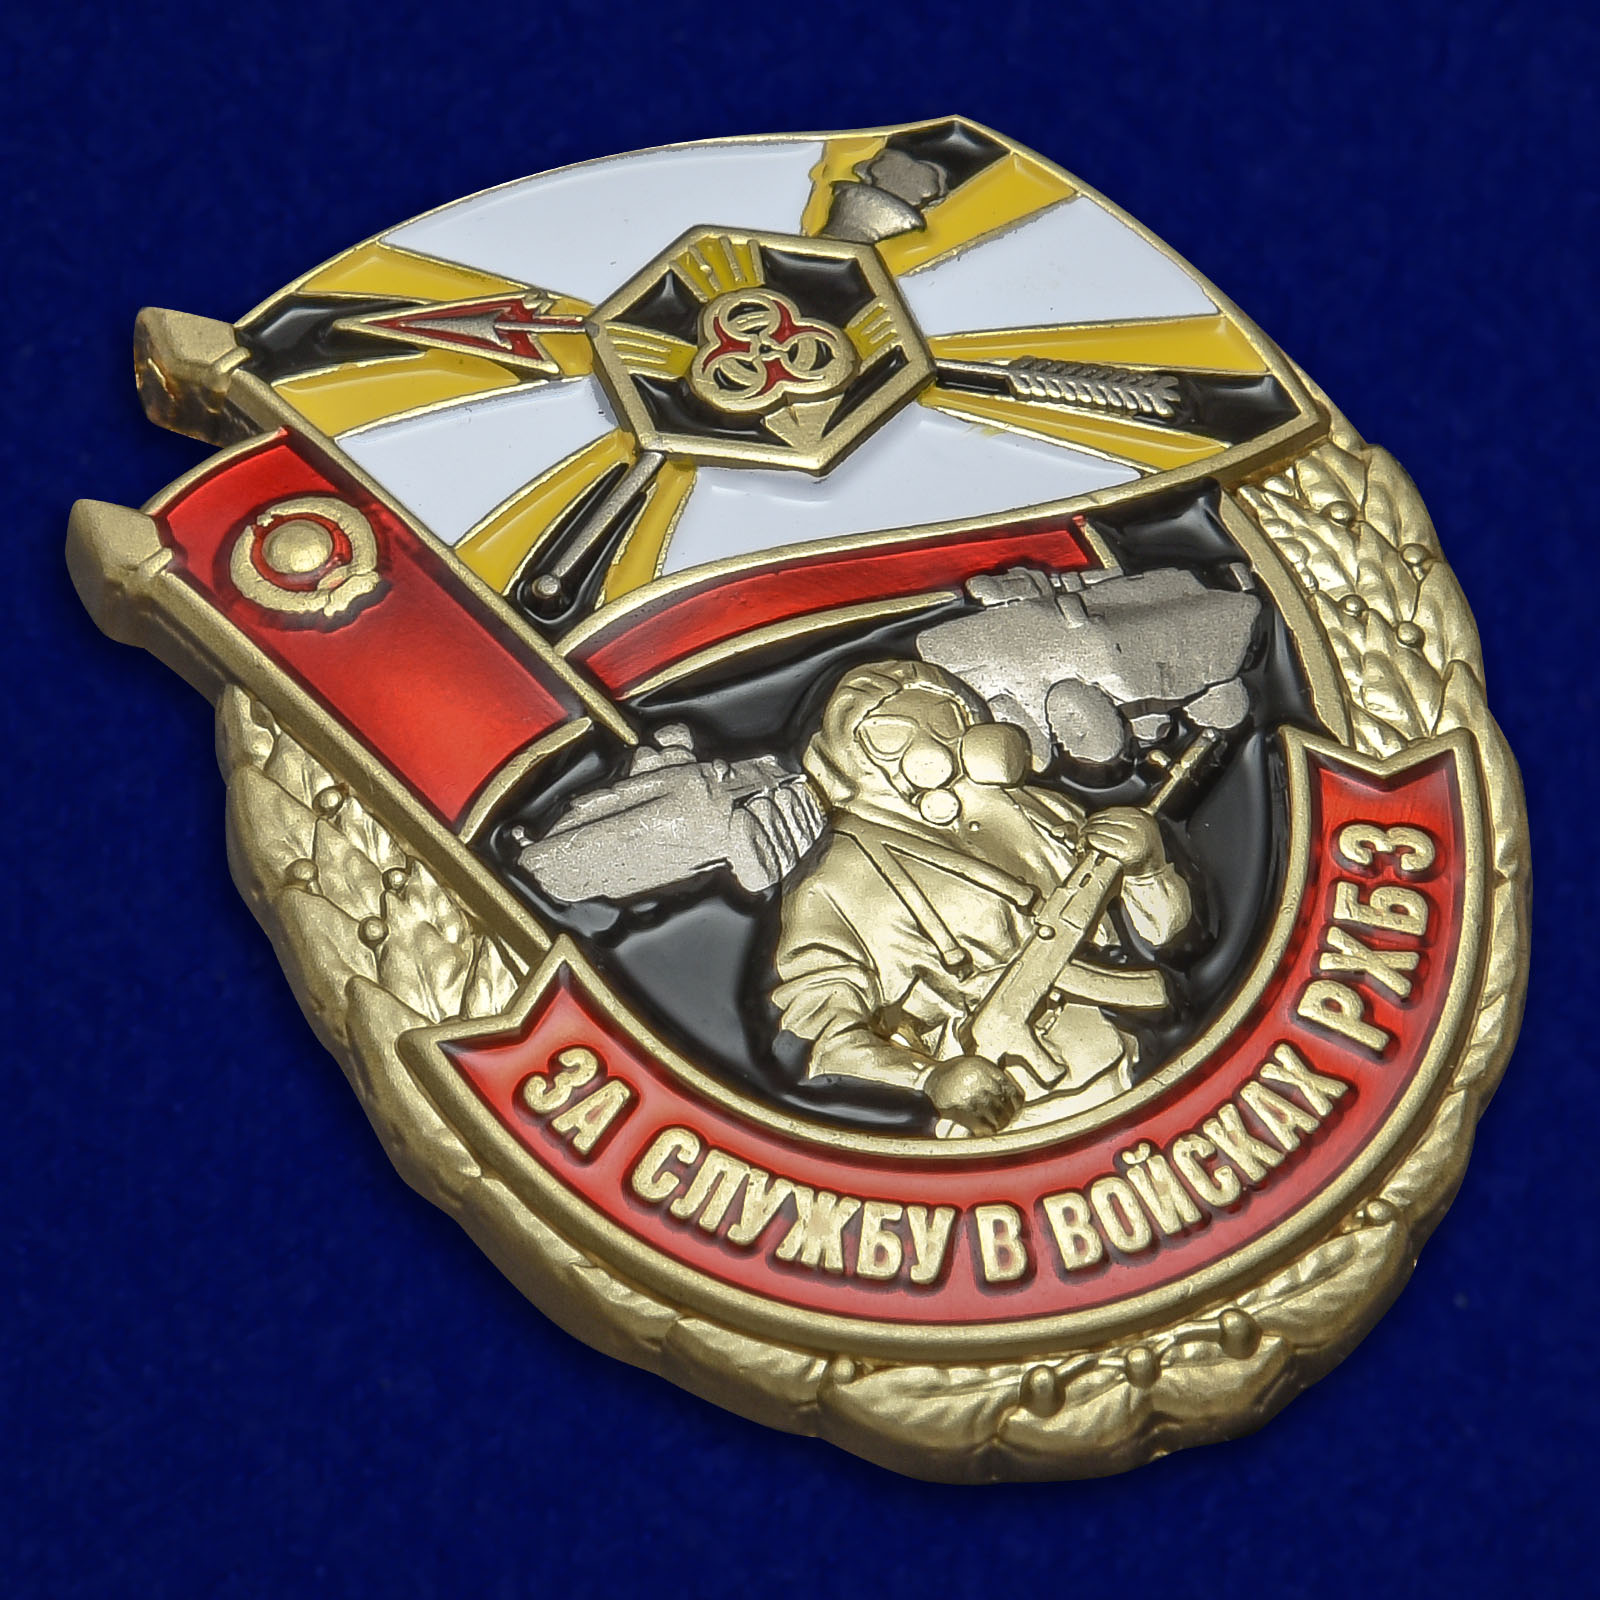 Наградной знак "За службу в войсках РХБЗ" 